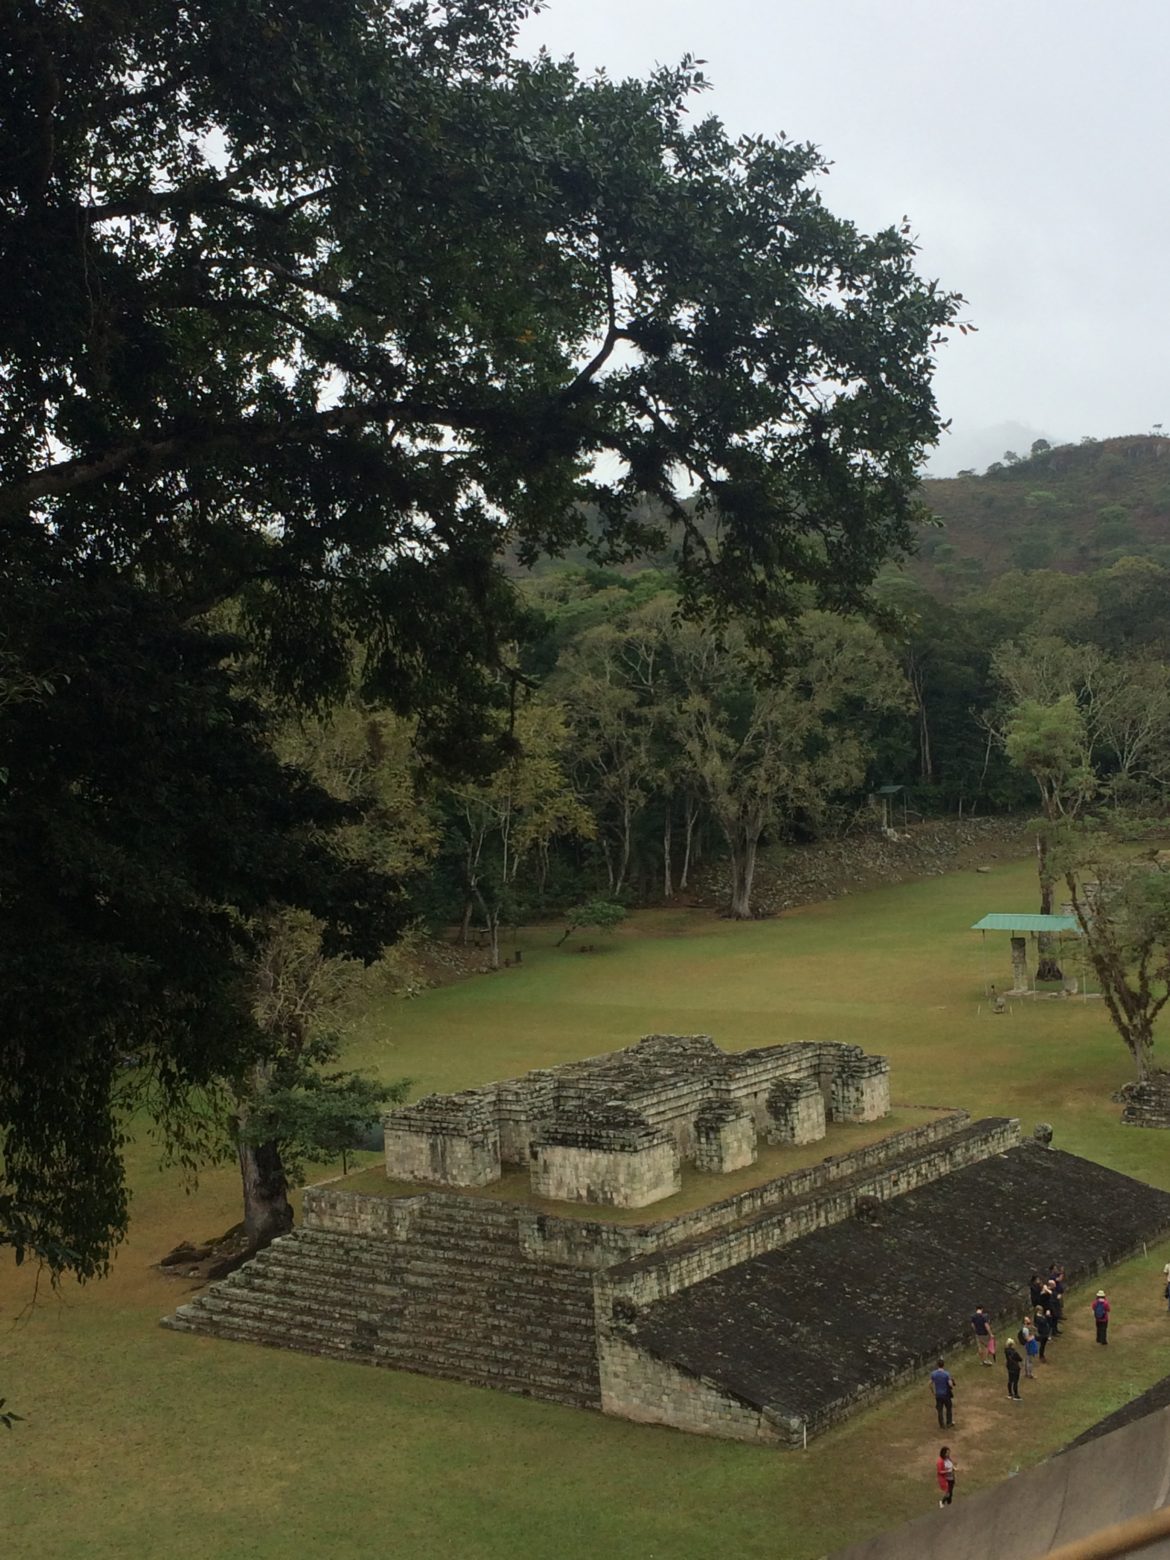 Exploring Little Gems Hidden in the Rough Exterior of Honduras